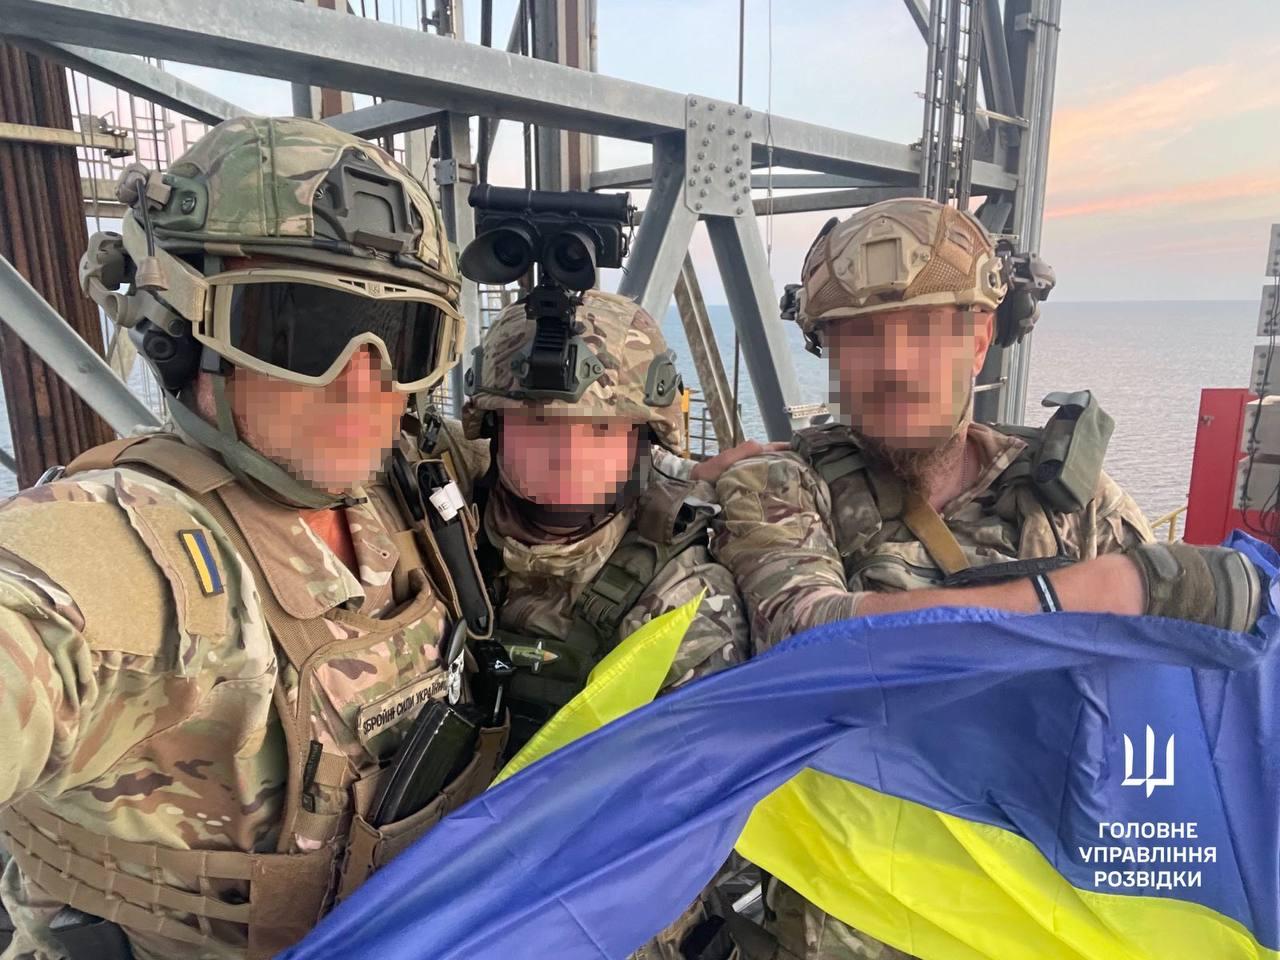 En ukrainsk specialstyrka återtog oljeborrtornen.